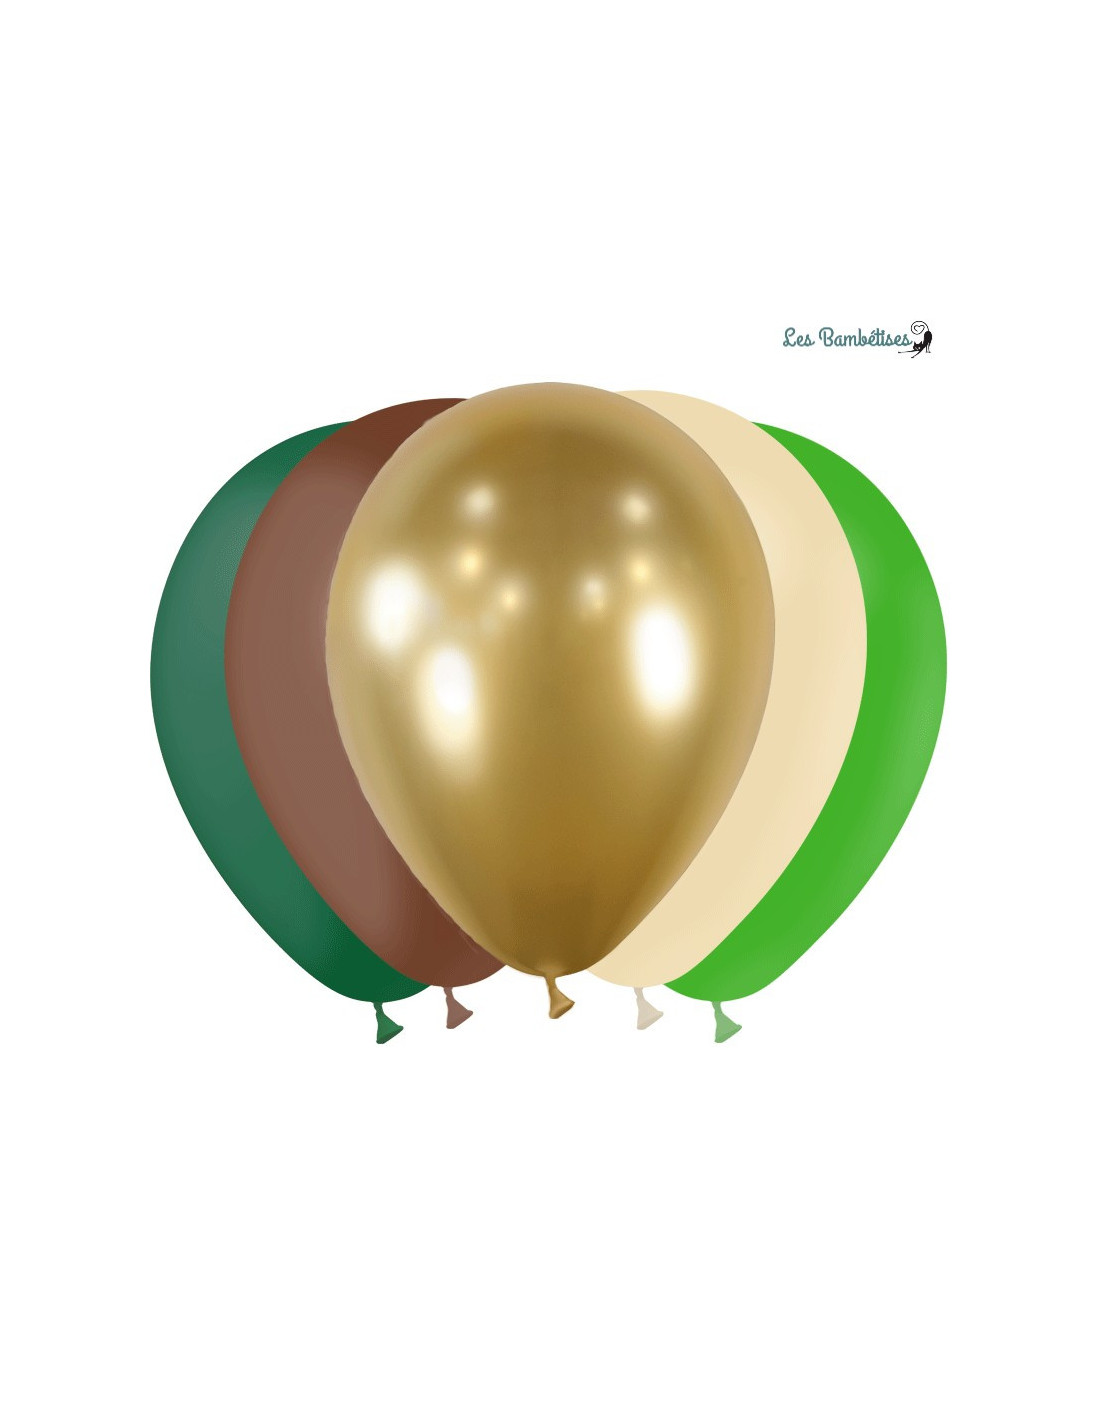 20 Ballons Jungle: Vert, Doré, Ivoire, Chocolat - Les Bambetises